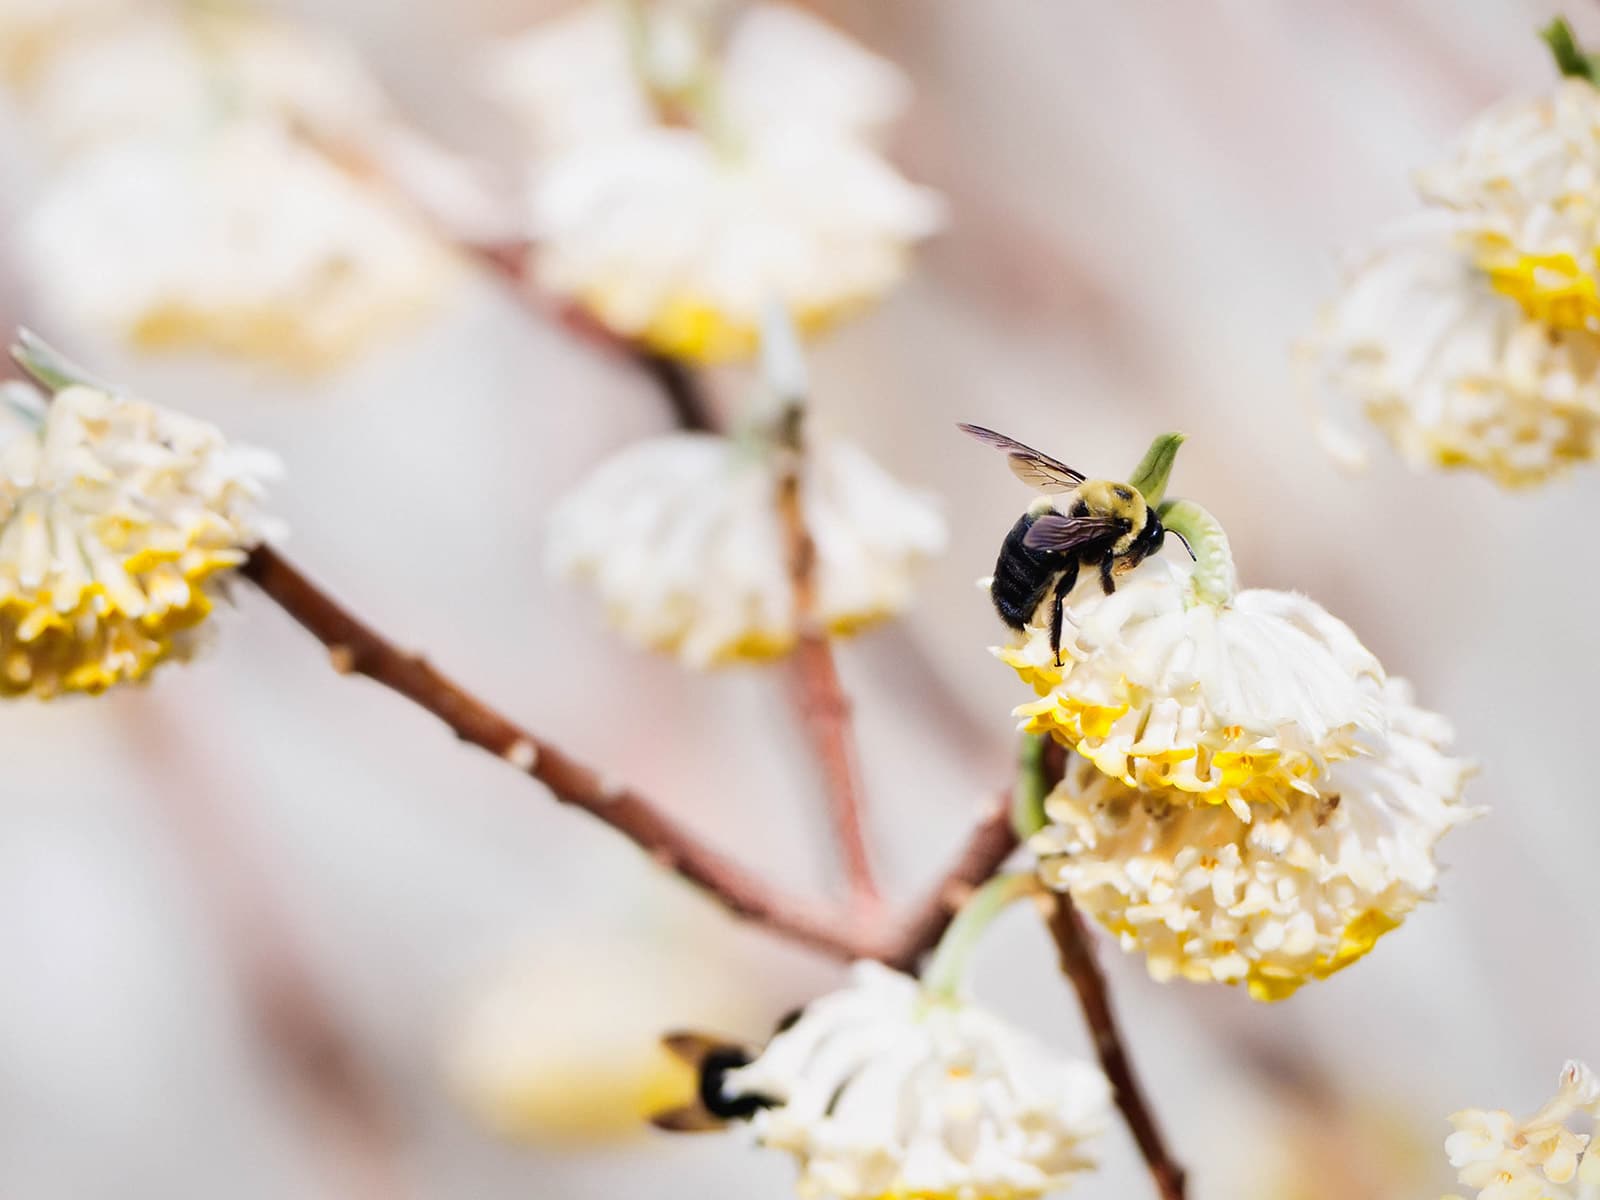 Carpenter bee feeding on nectar from white flowers